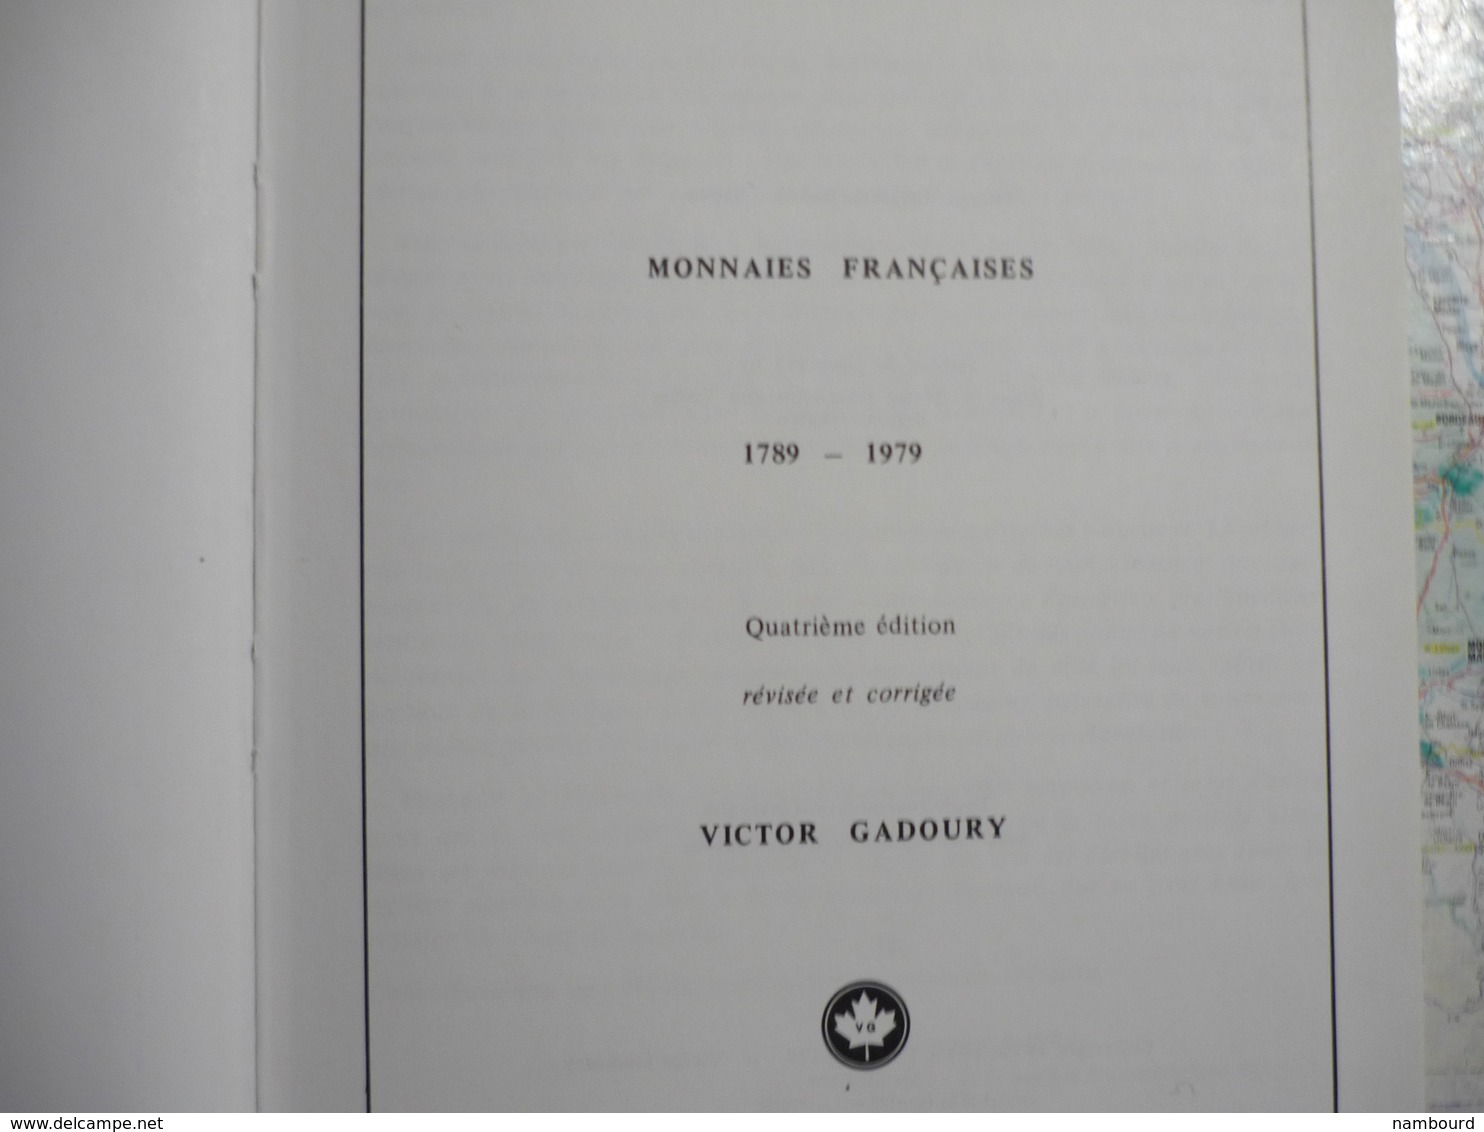 Catalogue Monnaies Françaises 1789-1979 Victor Gadoury 4-e édition - Material